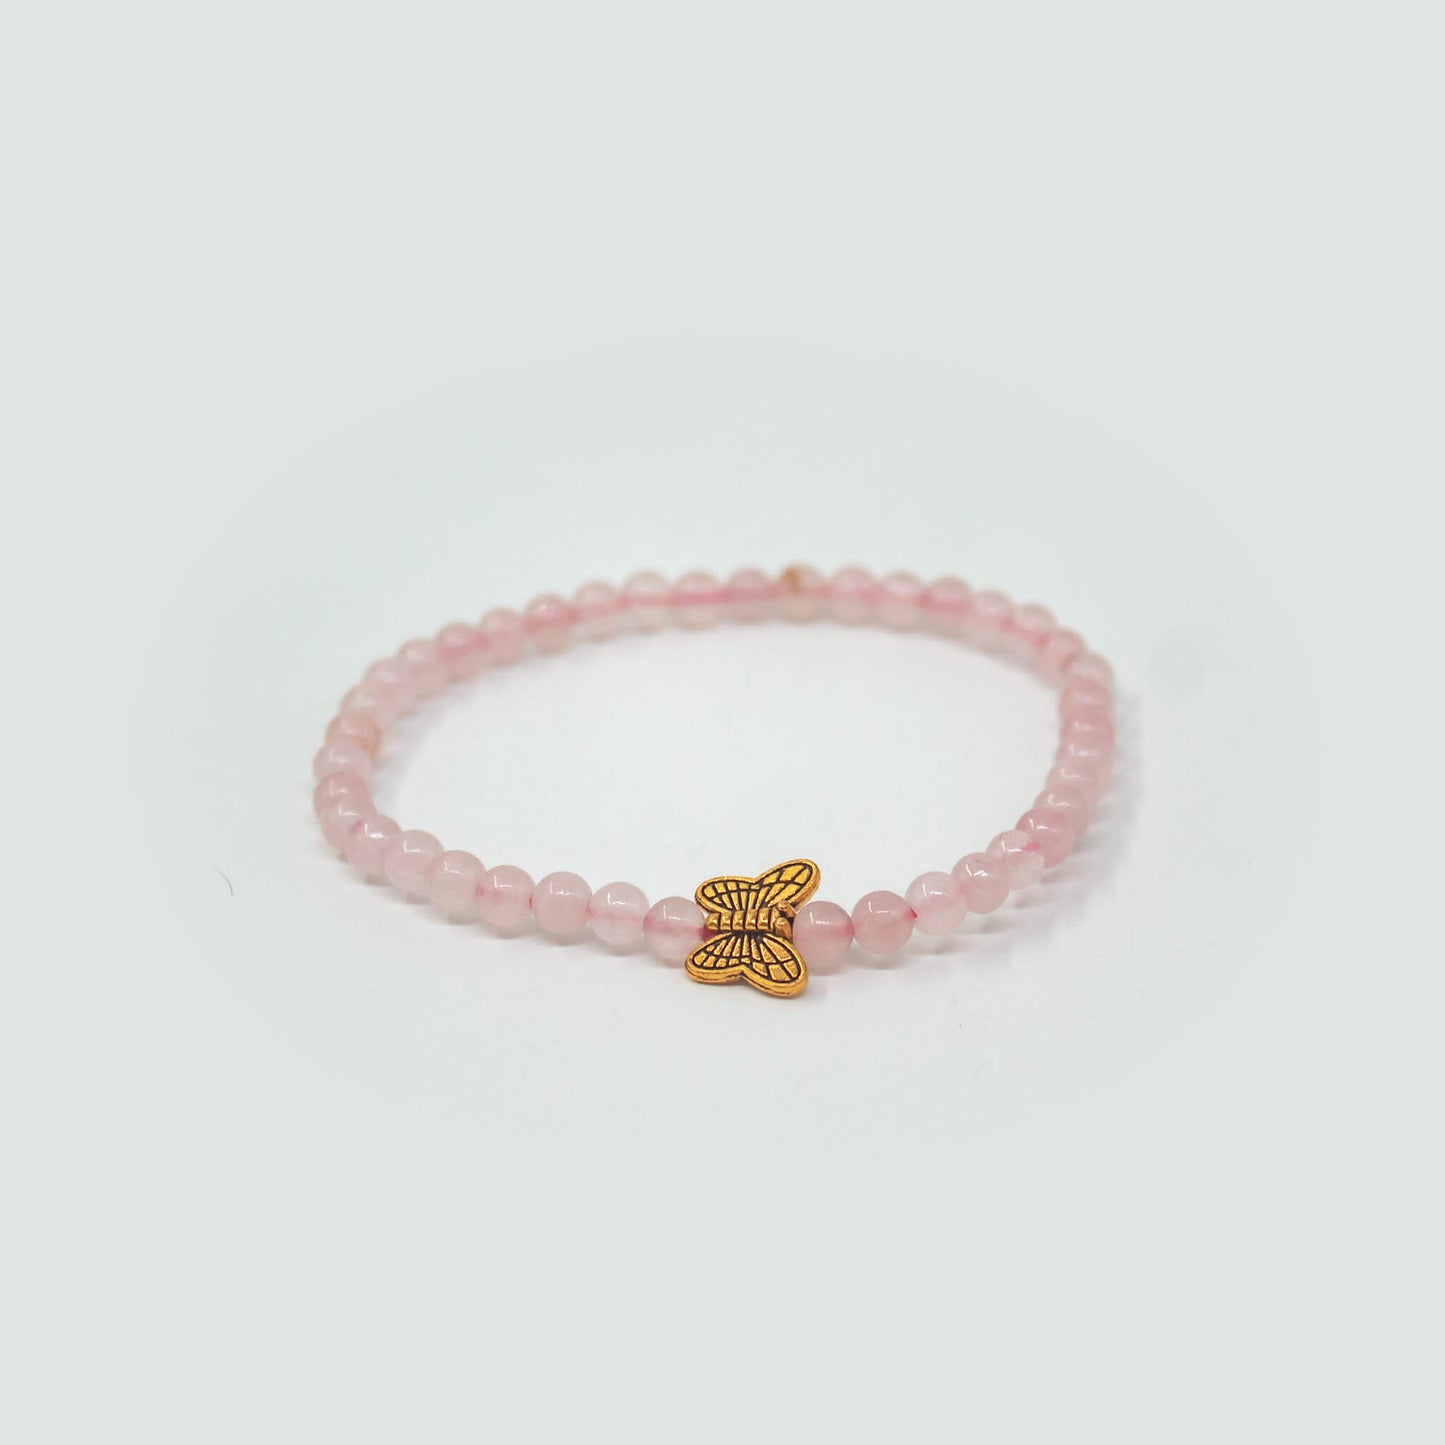 butterfly charm 4mm rose quartz bracelet